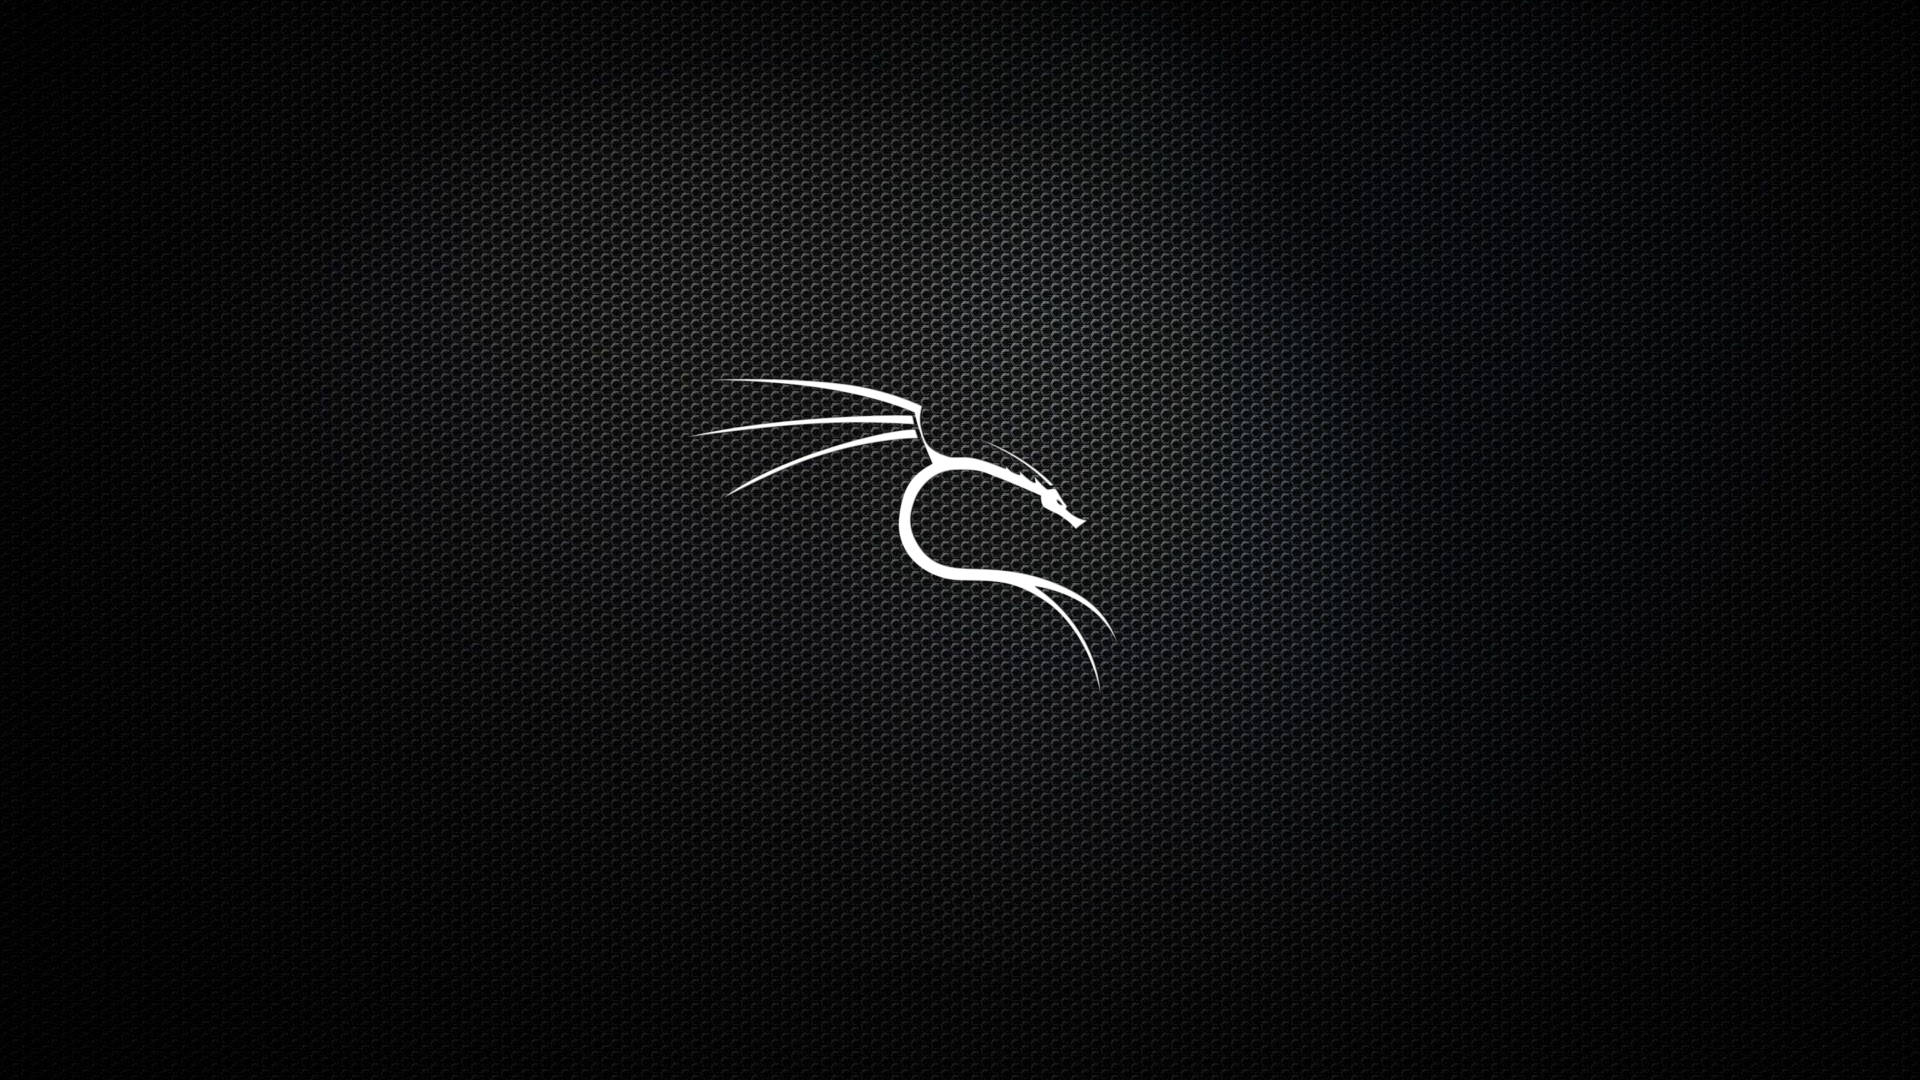 Kali Linux Silver Dragon Logo Background